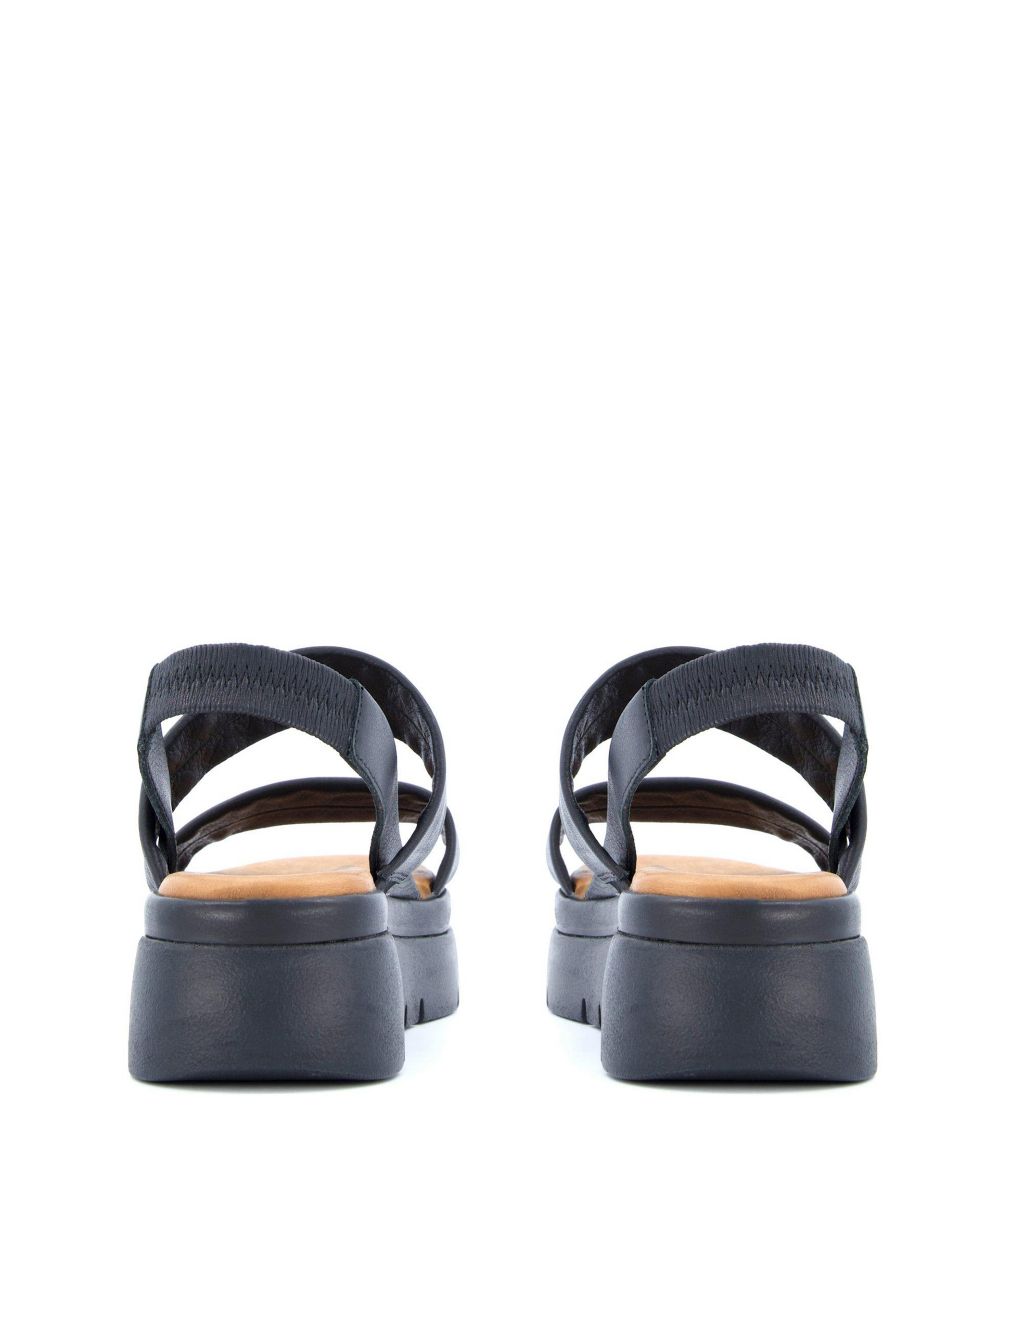 Leather Slip On Flatform Sandals image 4